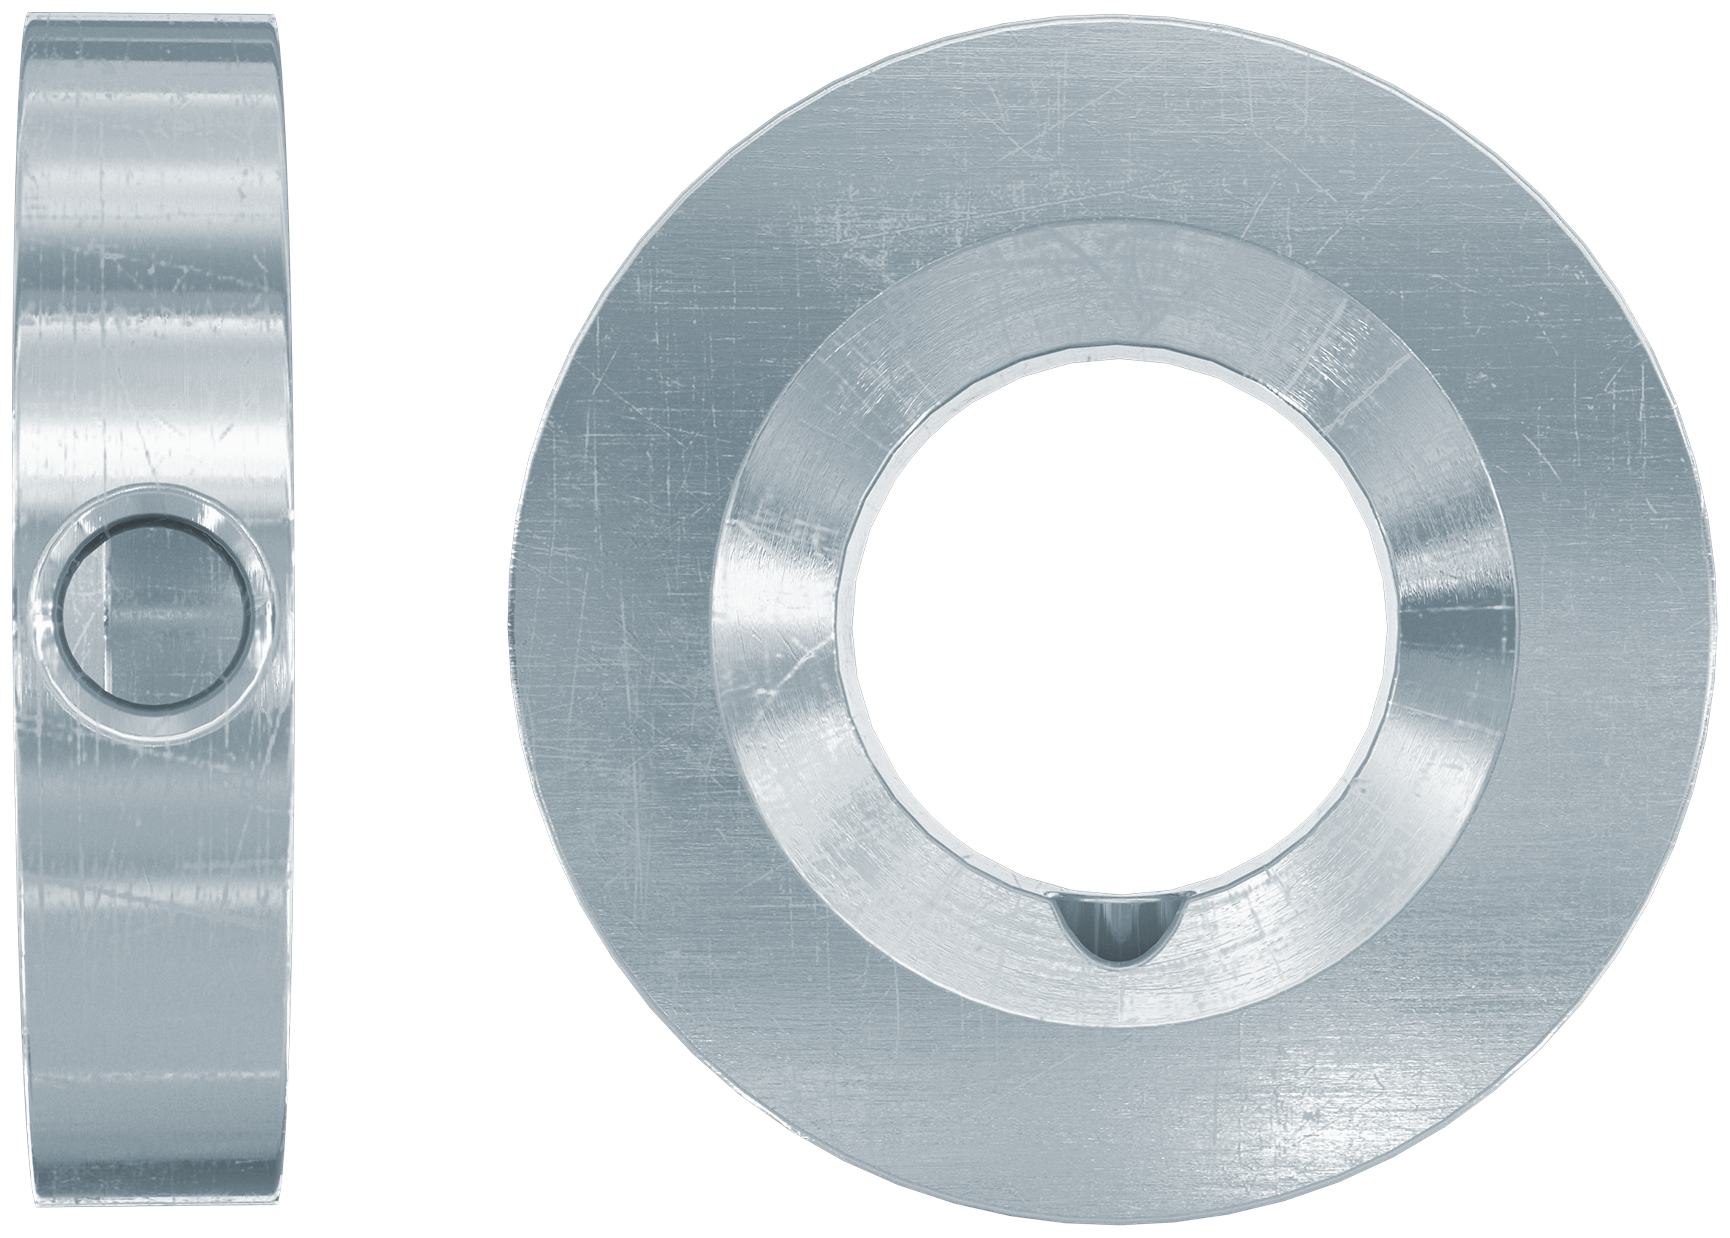 fischer Rondella di riempimento FFD 50x23x8 A4 KIT sismico (1 Pz.) Rondella in acciaio inossidabile R per il riempimento del gap anulare fra piastra e fissaggio.